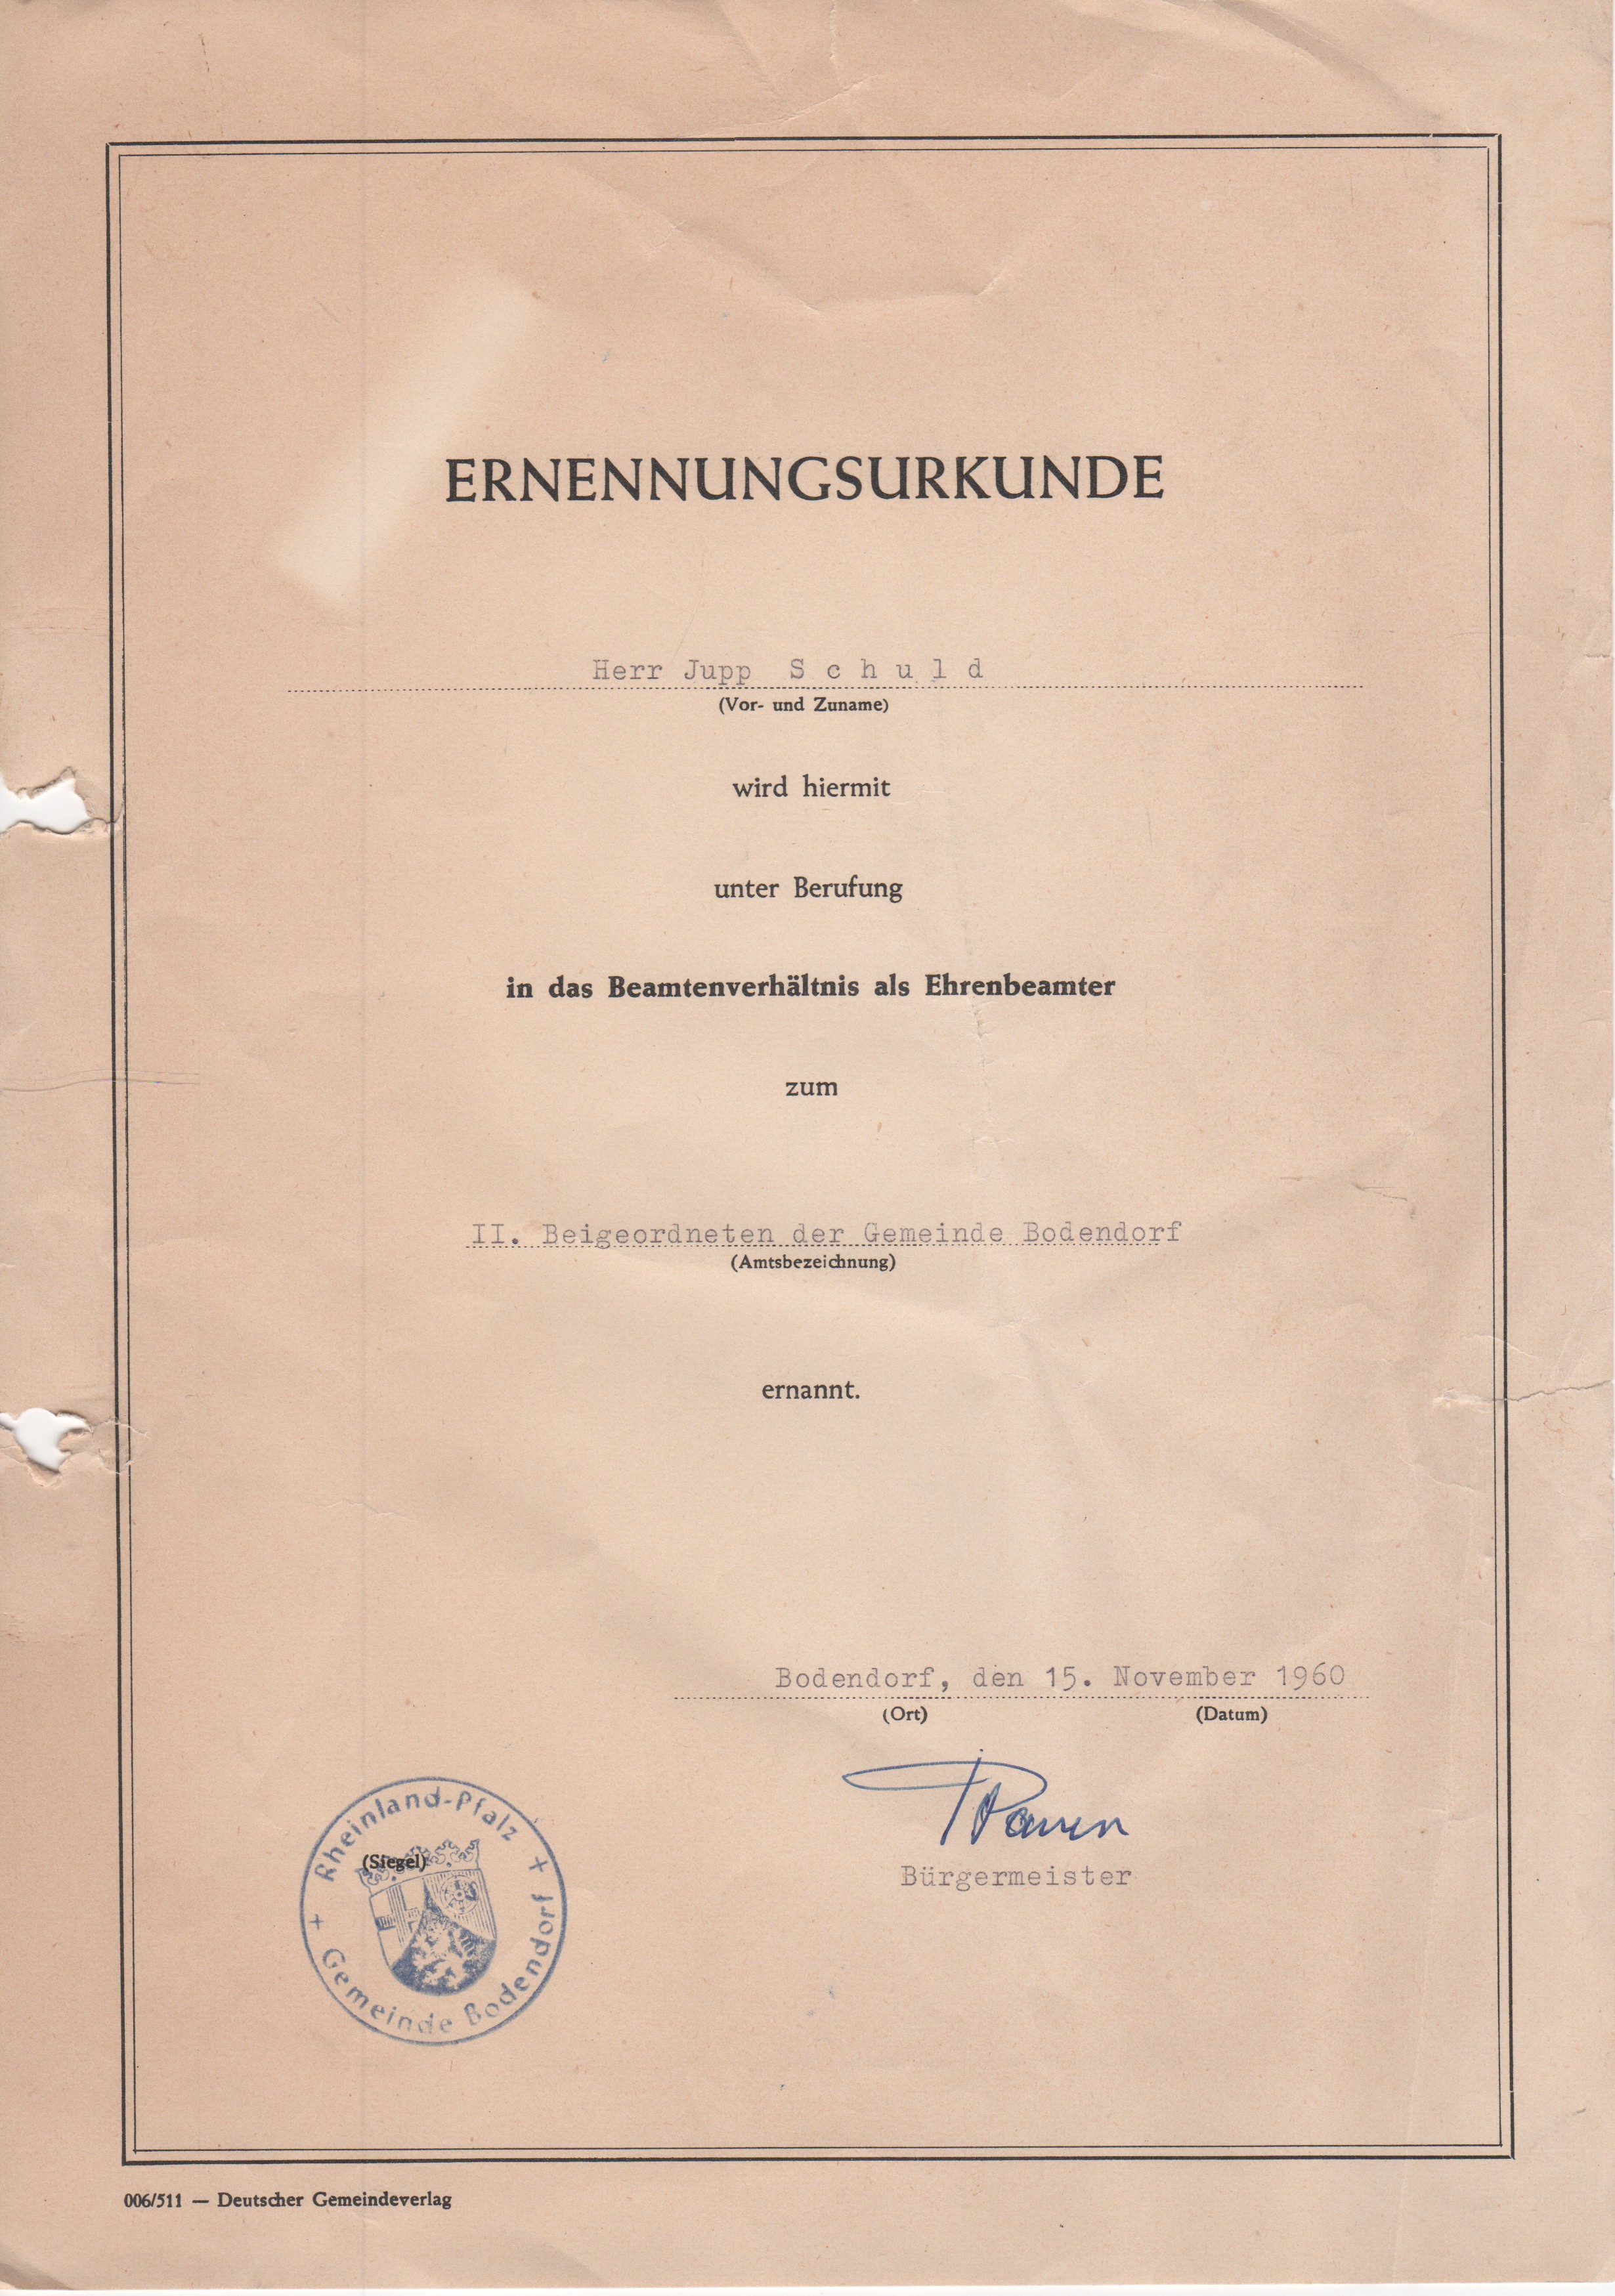 Die Ernennungsurkunde mit Siegel der Gemeinde Bodendorf von Bürgermeister Bauer unterschrieben worden. (Heimatmuseum und -Archiv Bad Bodendorf CC BY-NC-SA)